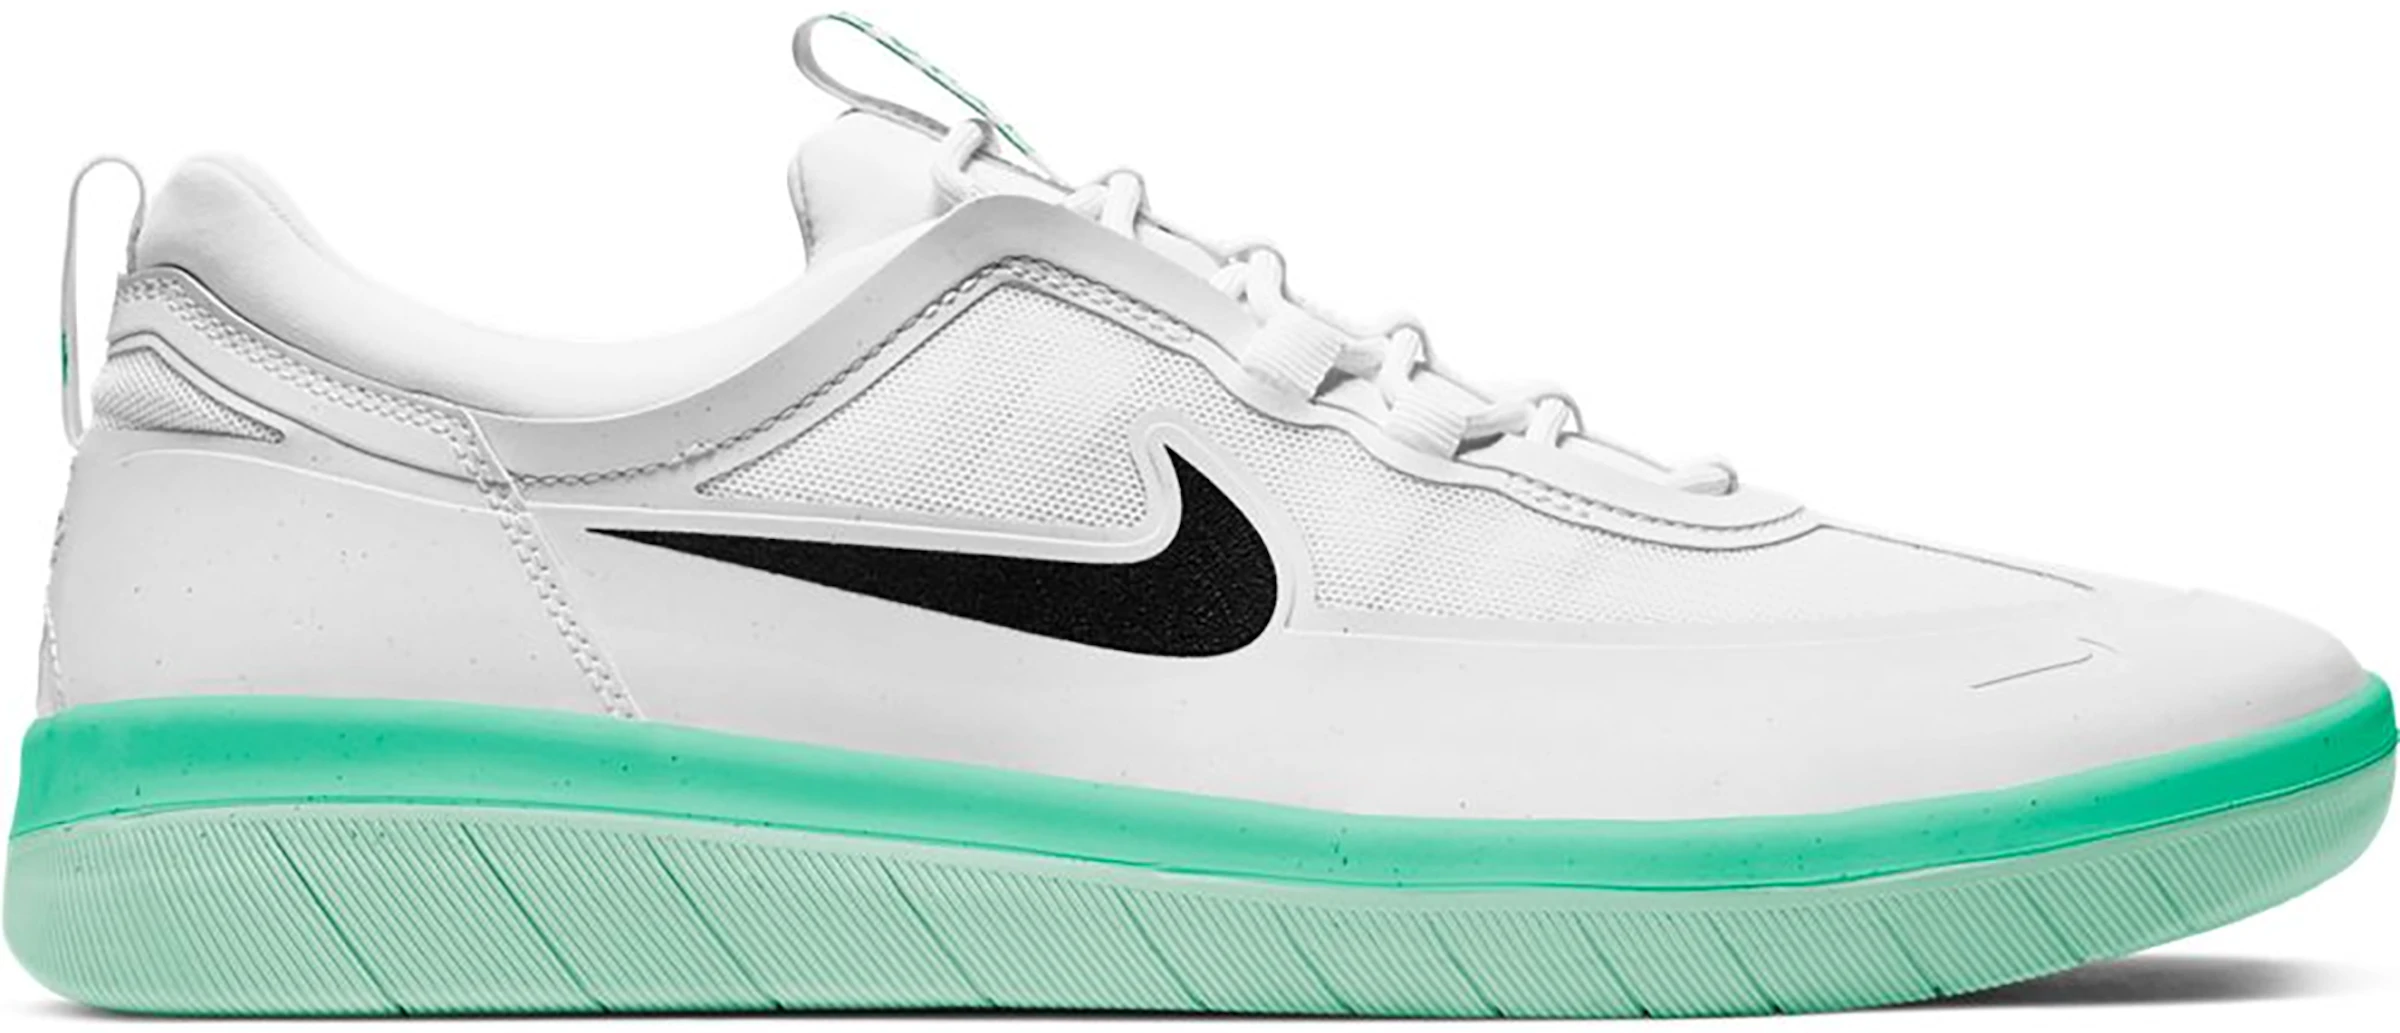 Nike Nyjah Free 2 White Black Green Glow - BV2078-104 - ES